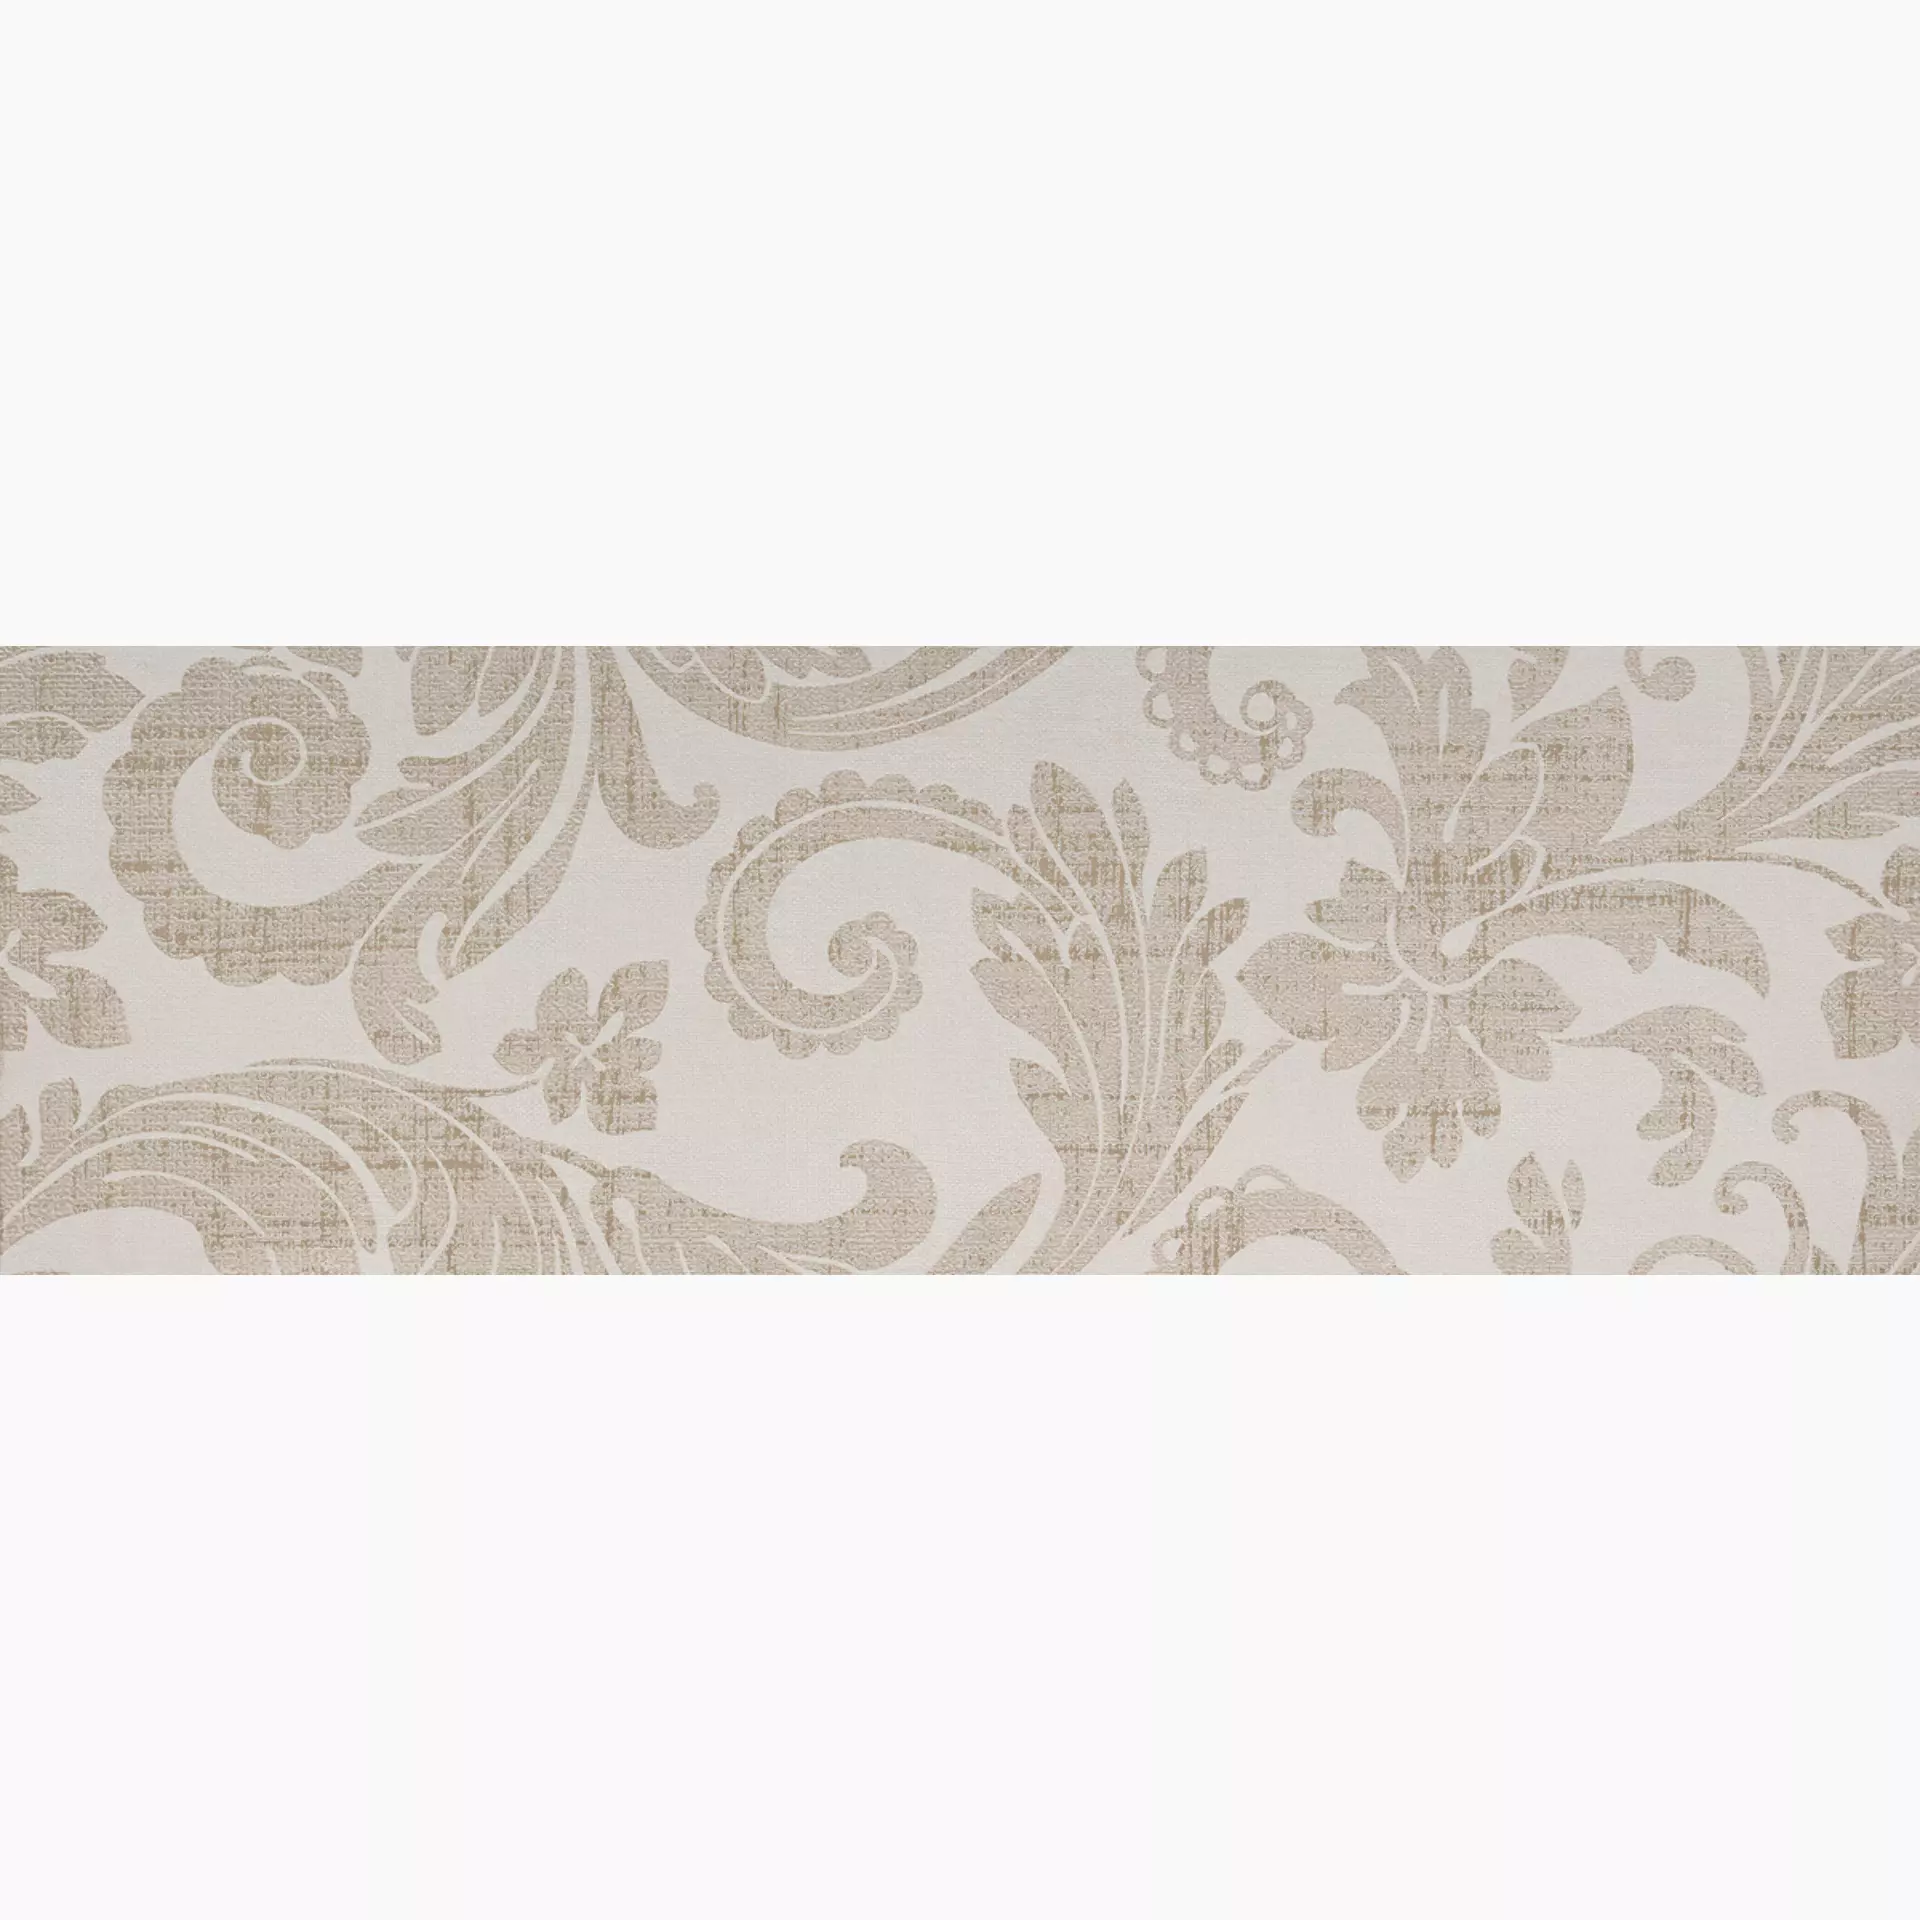 Wandfliese Marazzi Fabric Hemp Naturale – Matt Hemp M0KT matt natur 40x120cm Dekor Tapestry 6mm